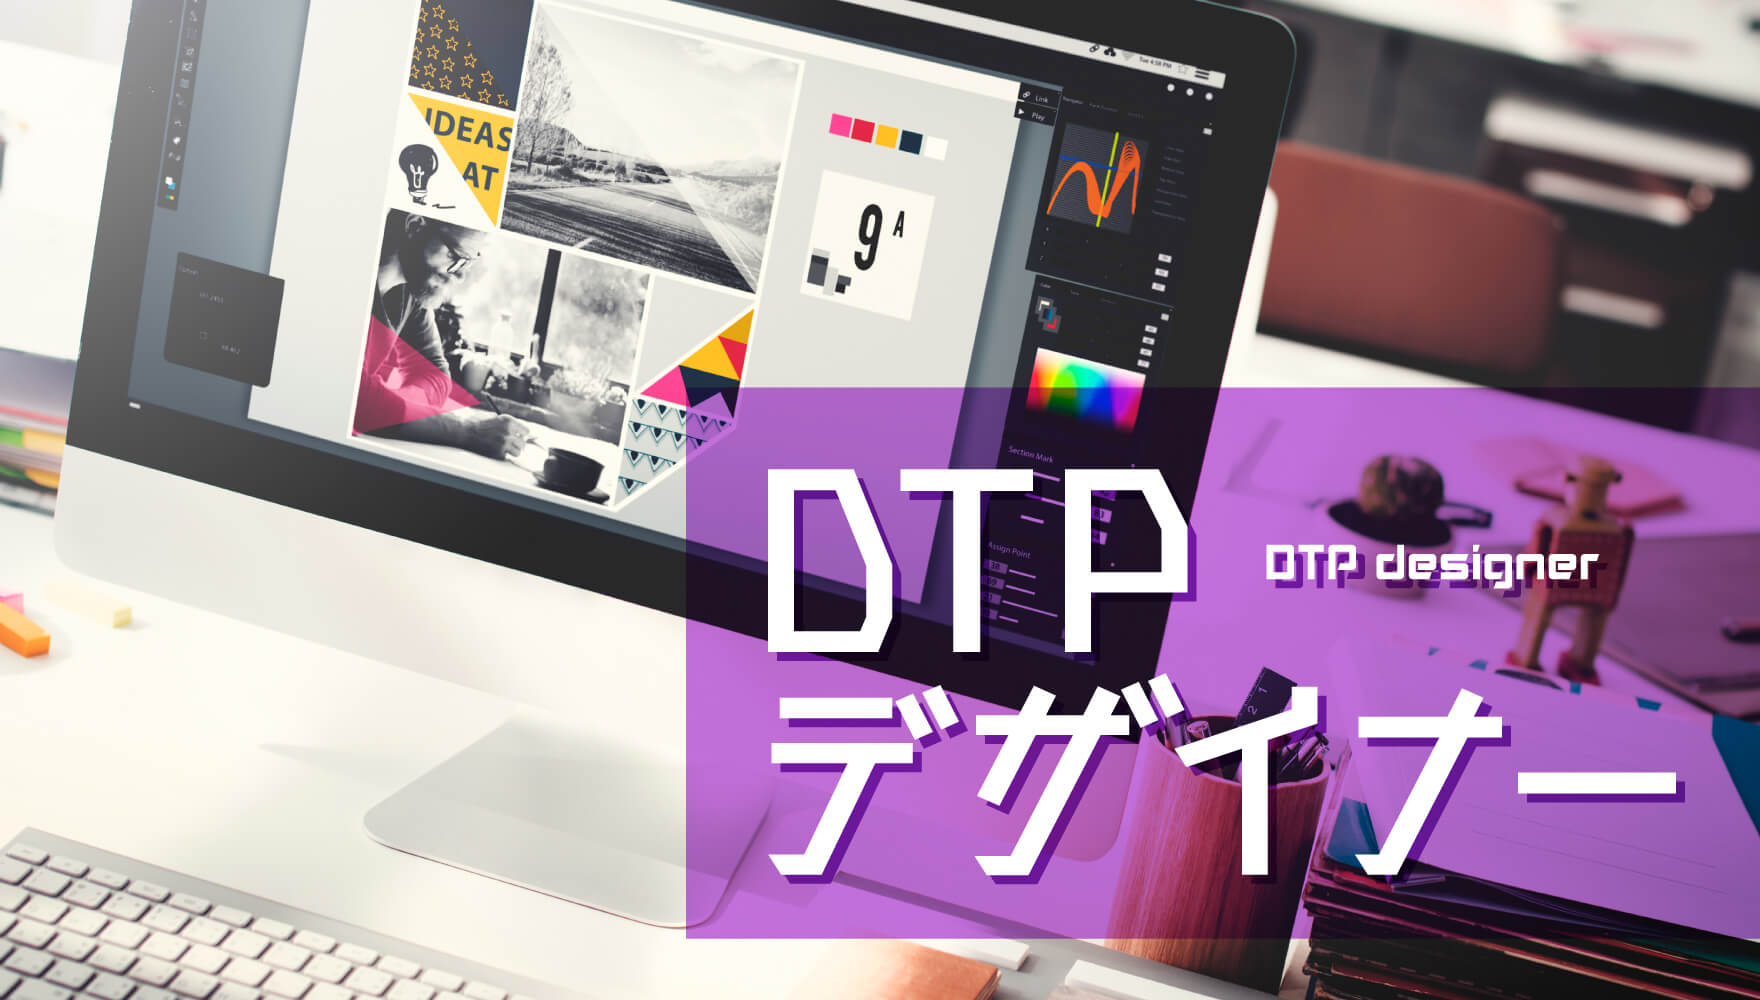 spear-translation-desktop-publishing-dtp-service